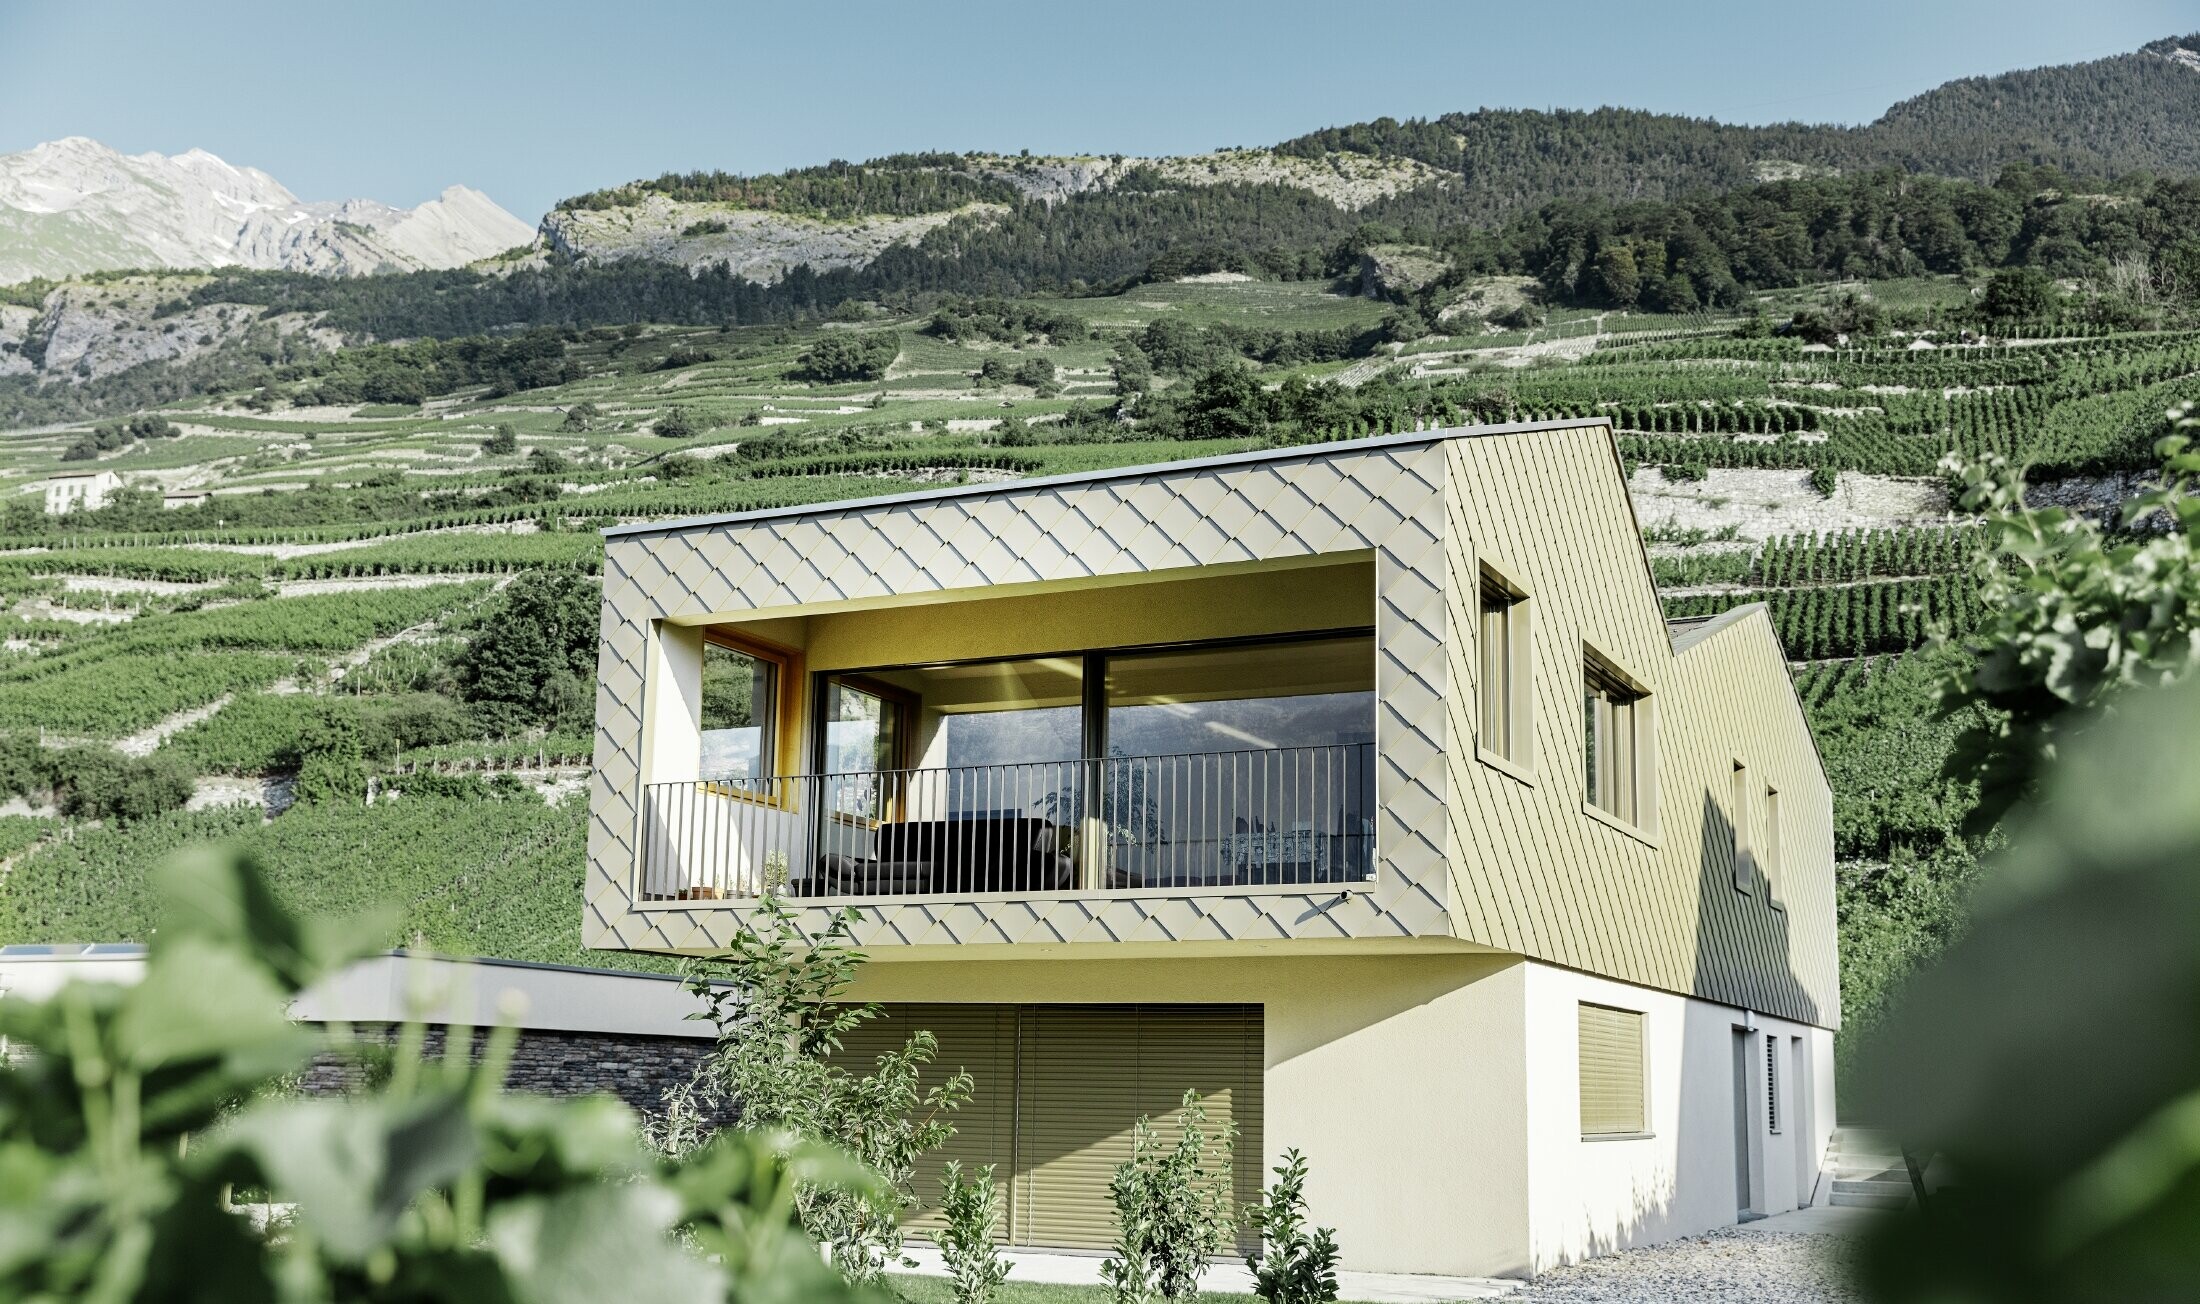 modernt enfamiljshus mitt bland vinbergen i Rhônedalen med 4 olika takytor och ett öppet galleri med en rombfasad i brons